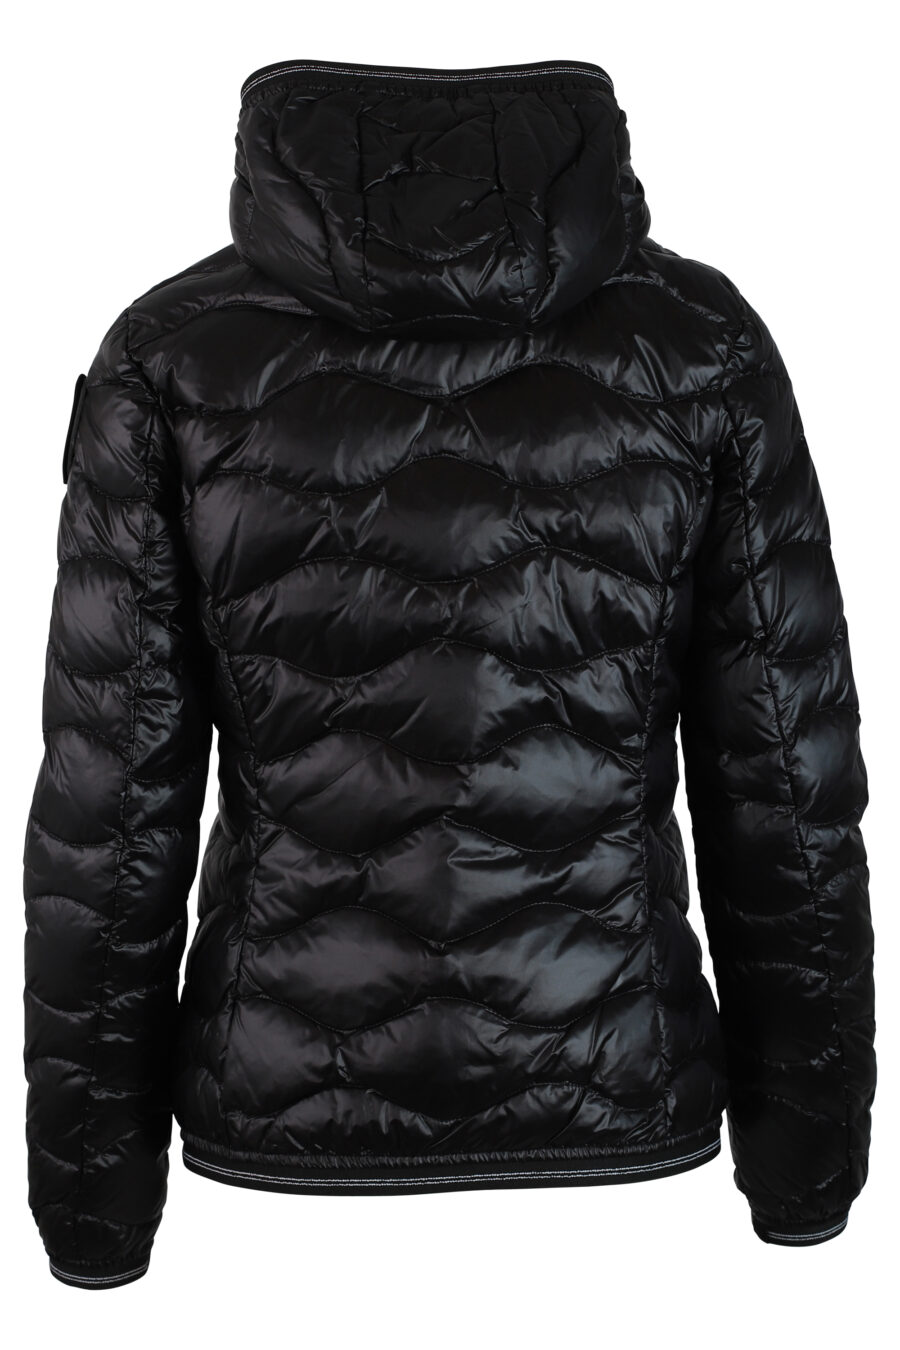 Veste noire avec capuche et lignes ondulées avec patch latéral - IMG 0225